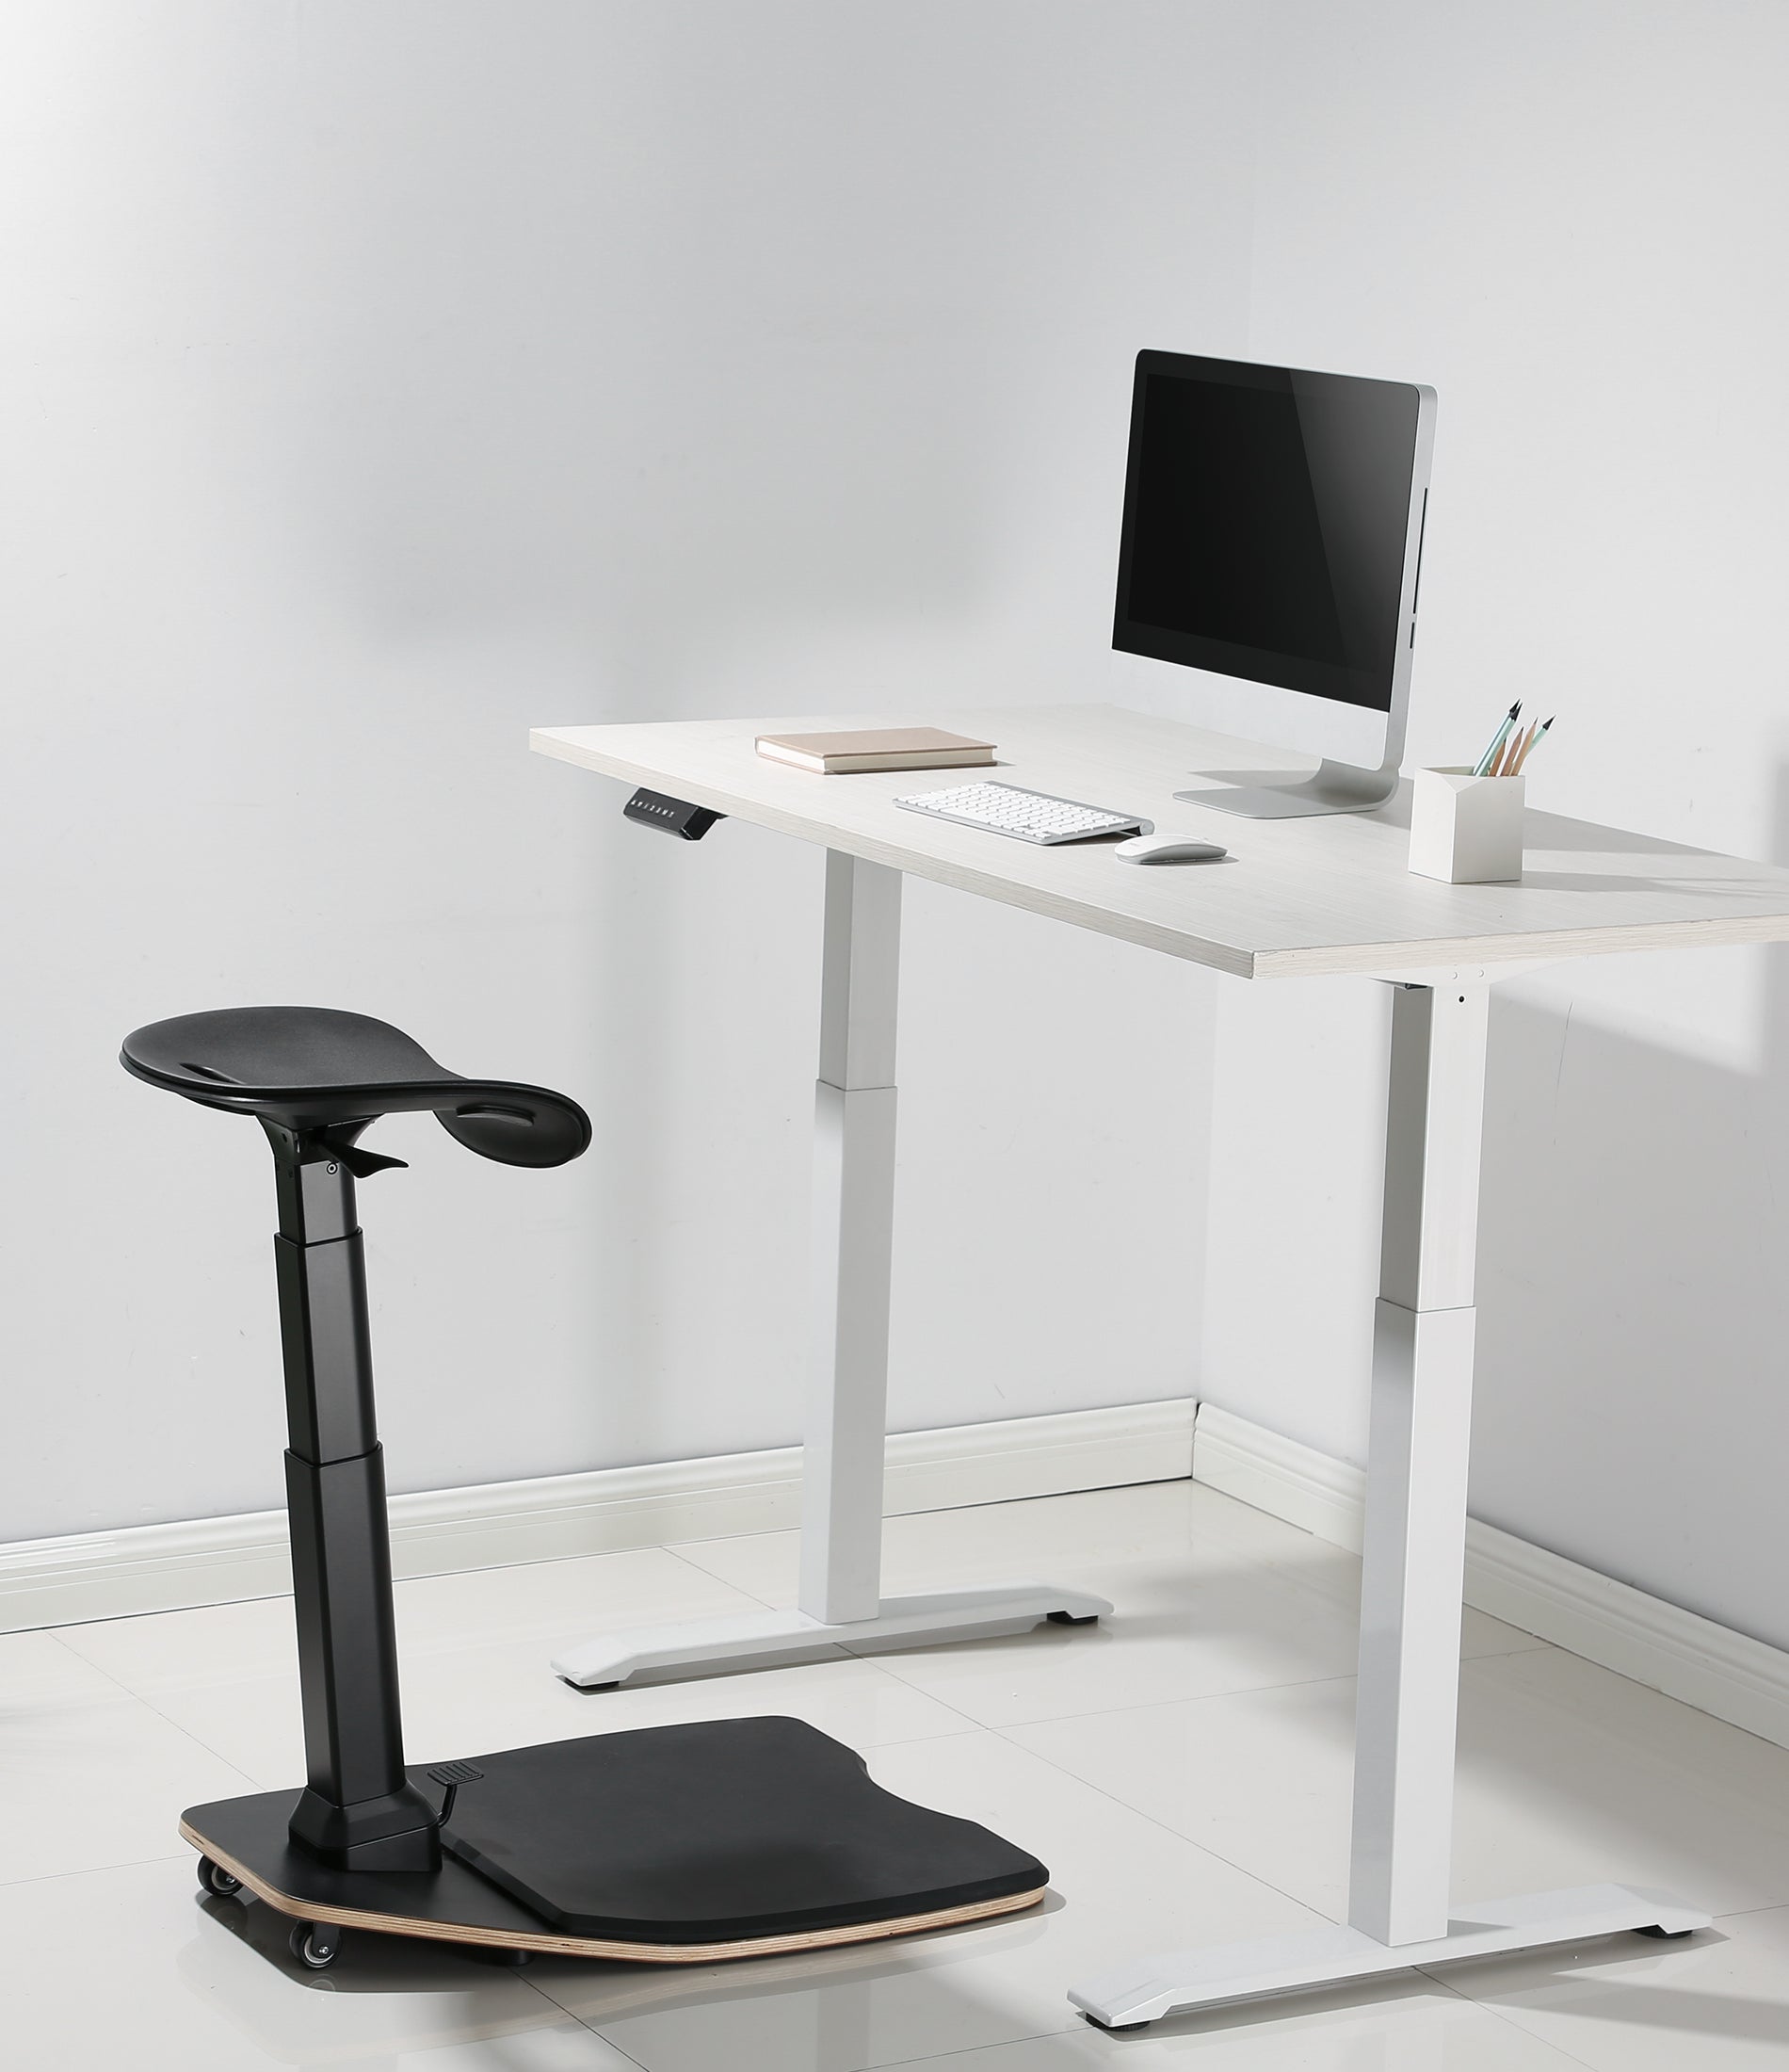 OCOMMO Standing Desk Chair